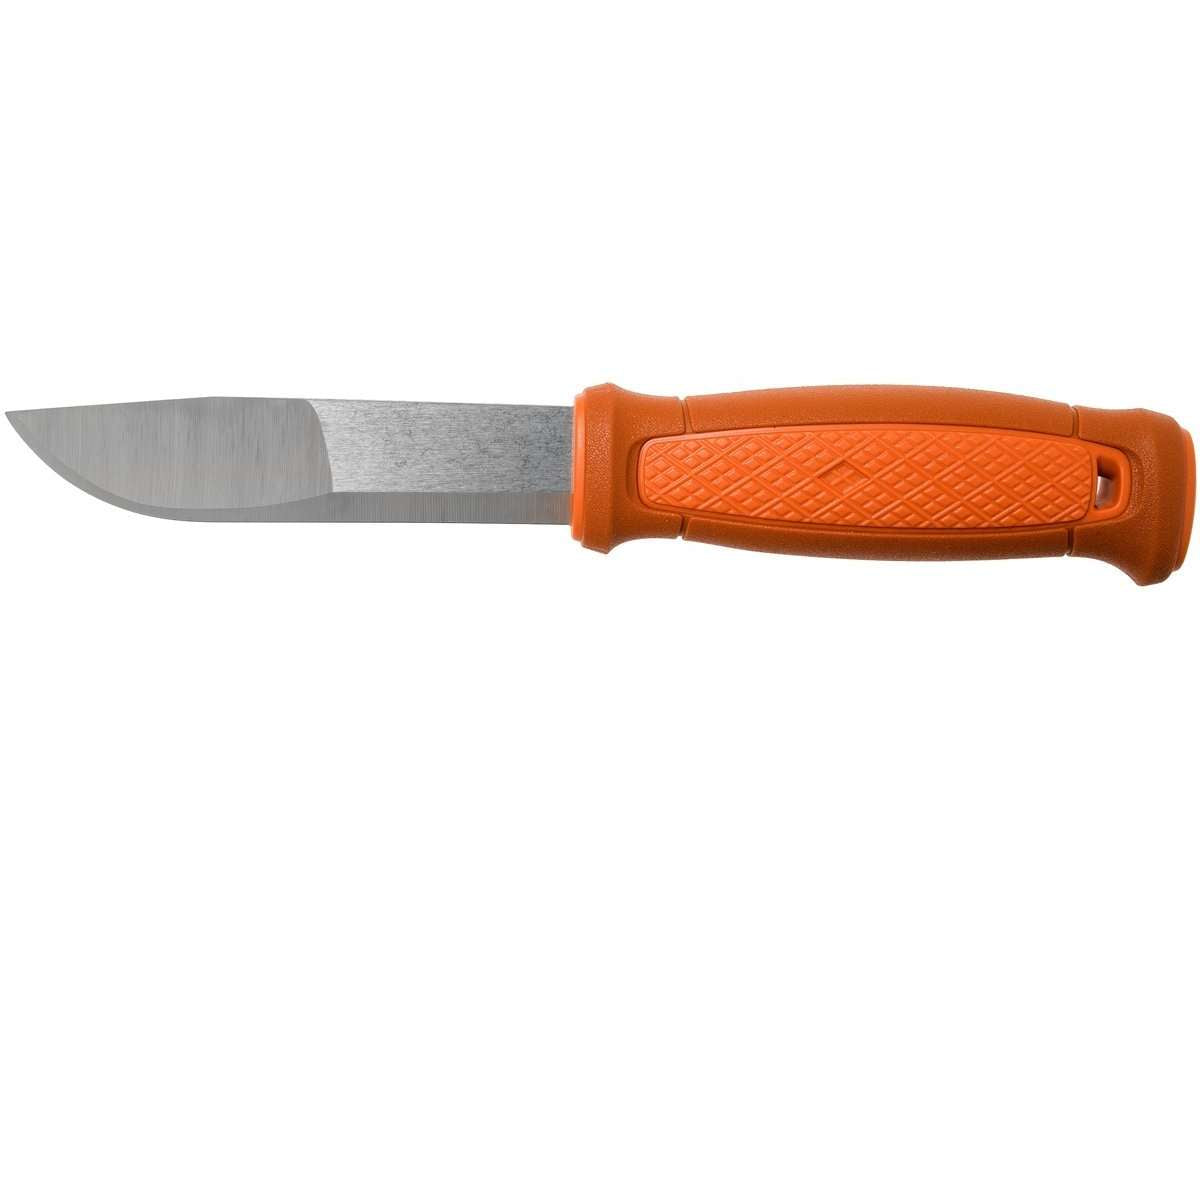 Mora Knives, Morakniv Kansbol, Fixed Blade Bushcraft Knives, Wylies Outdoor World,